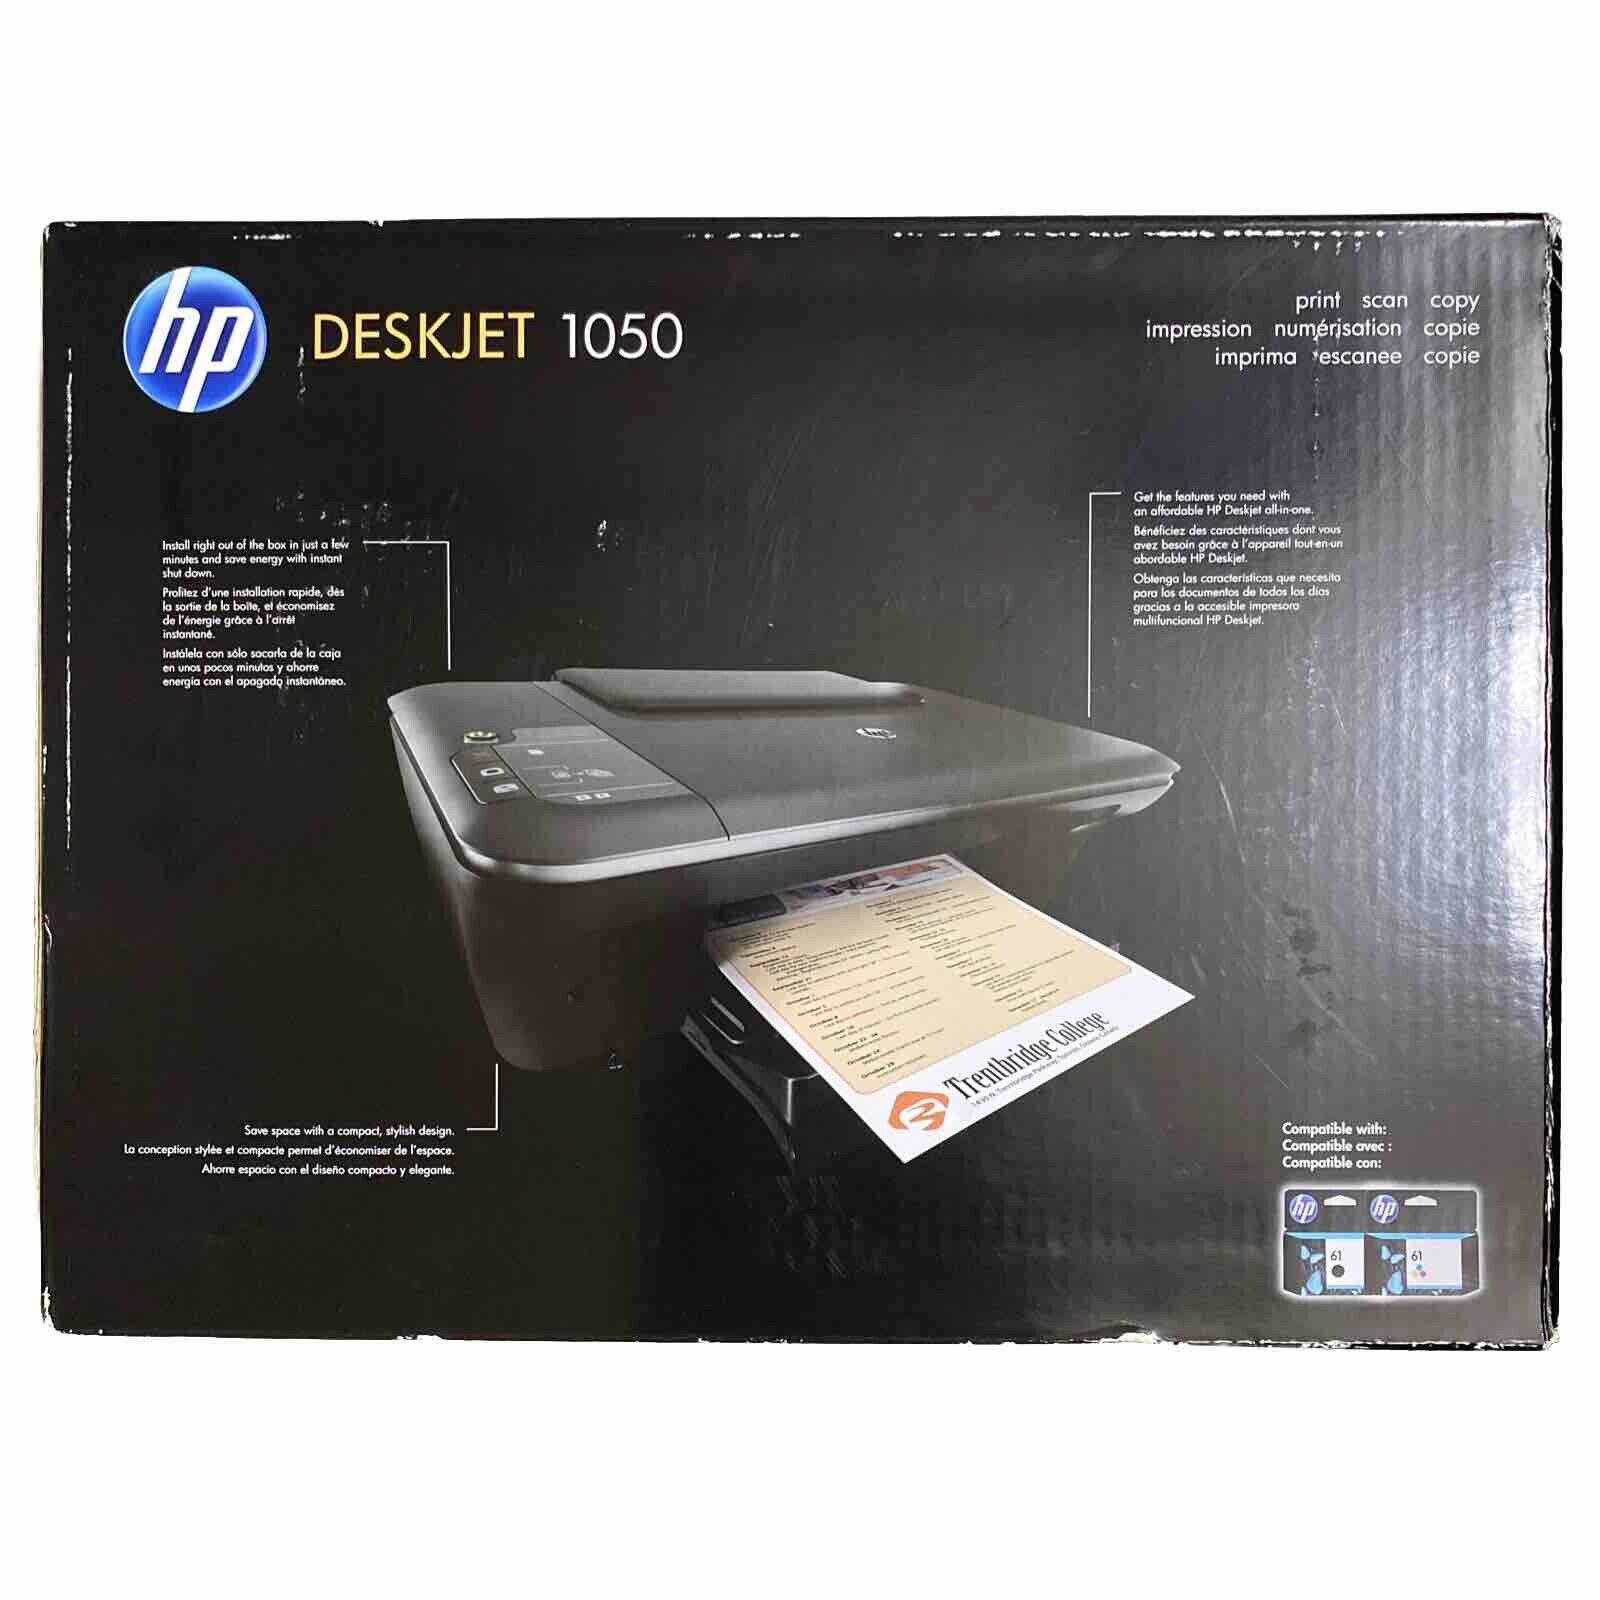 HP Deskjet 1050 All-In-One Inkjet Printer Print Scan Copy - NEW Sealed In Box